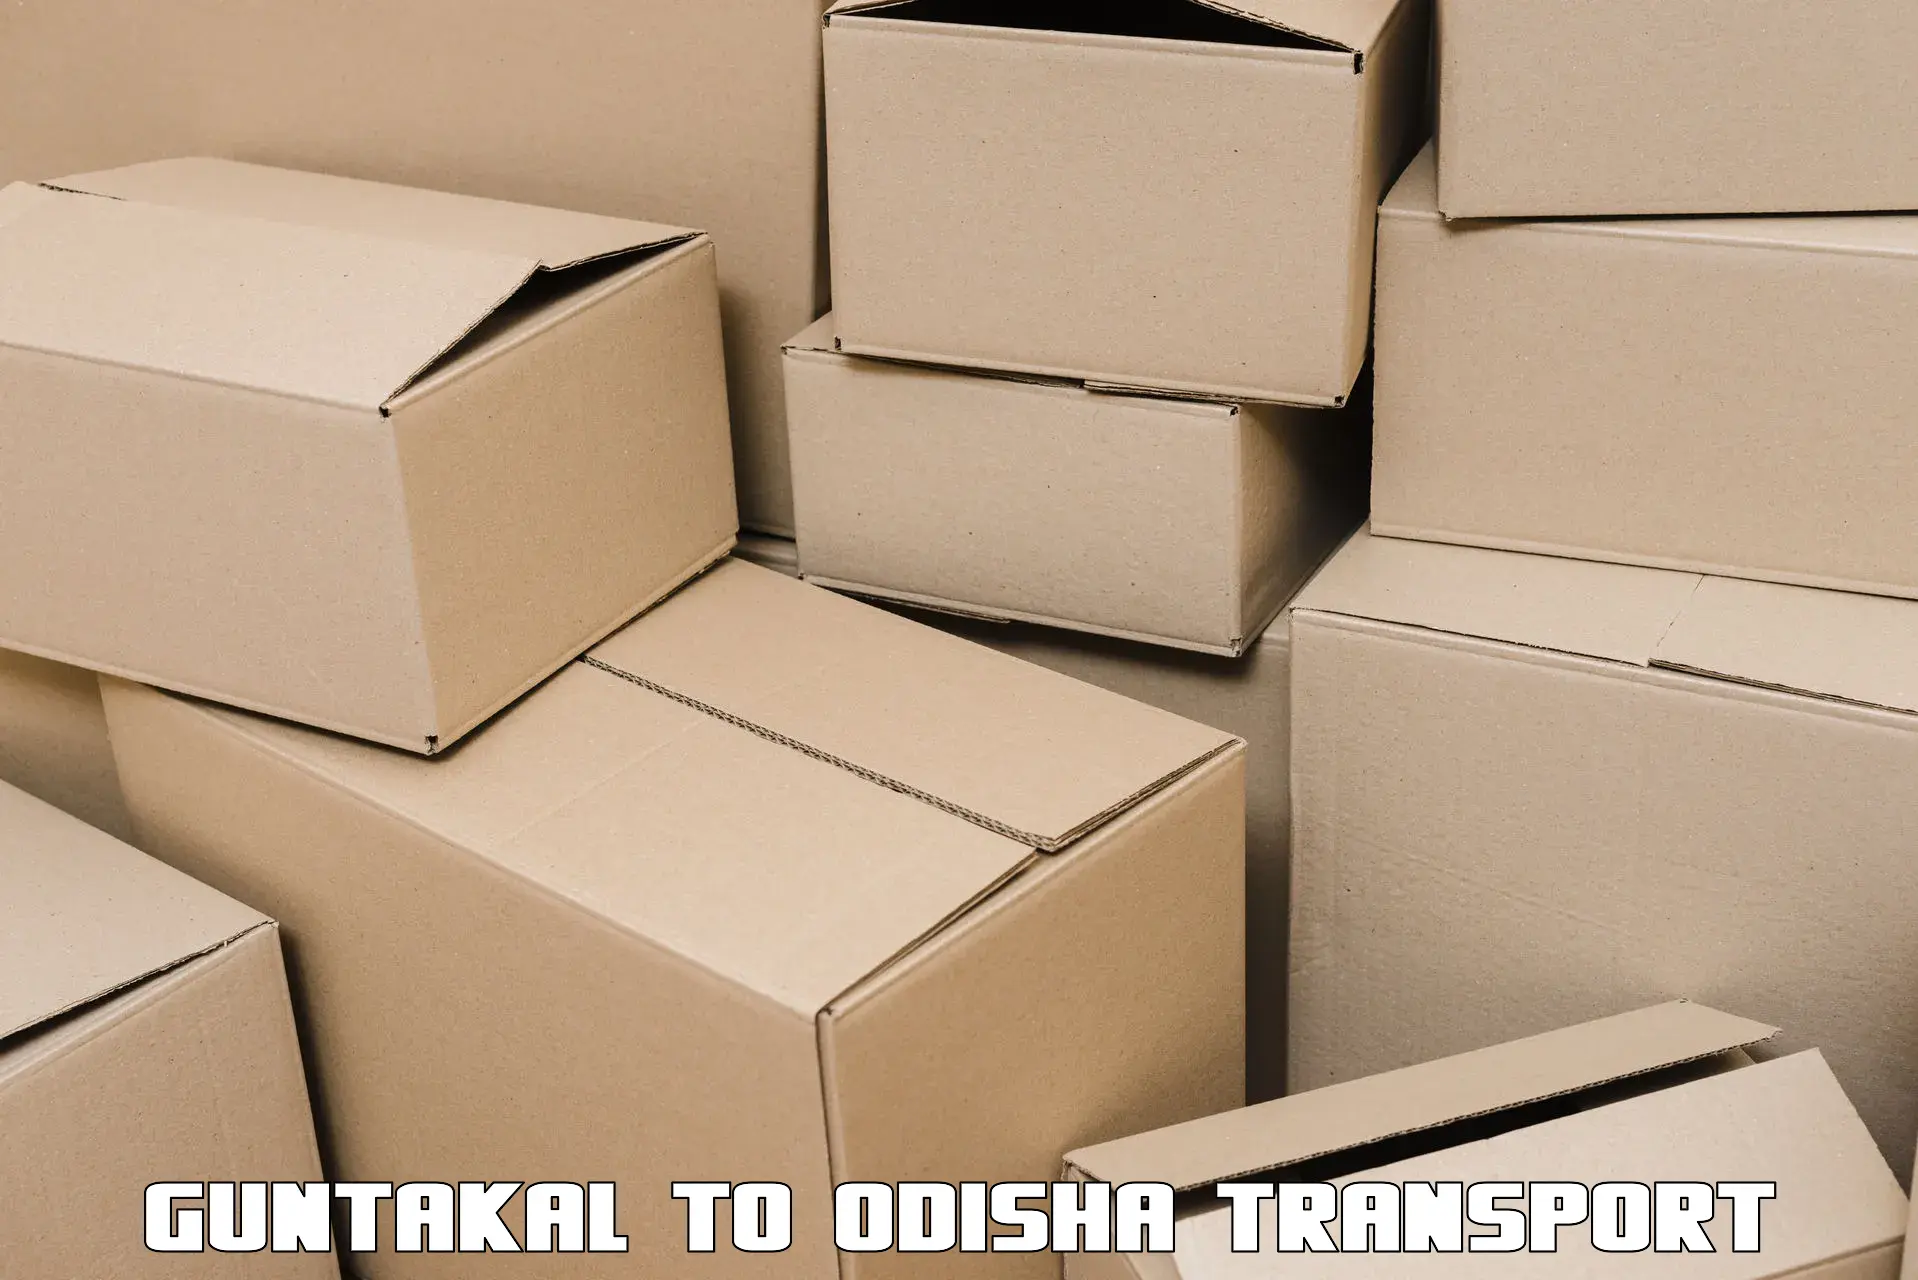 Container transport service Guntakal to Balangir